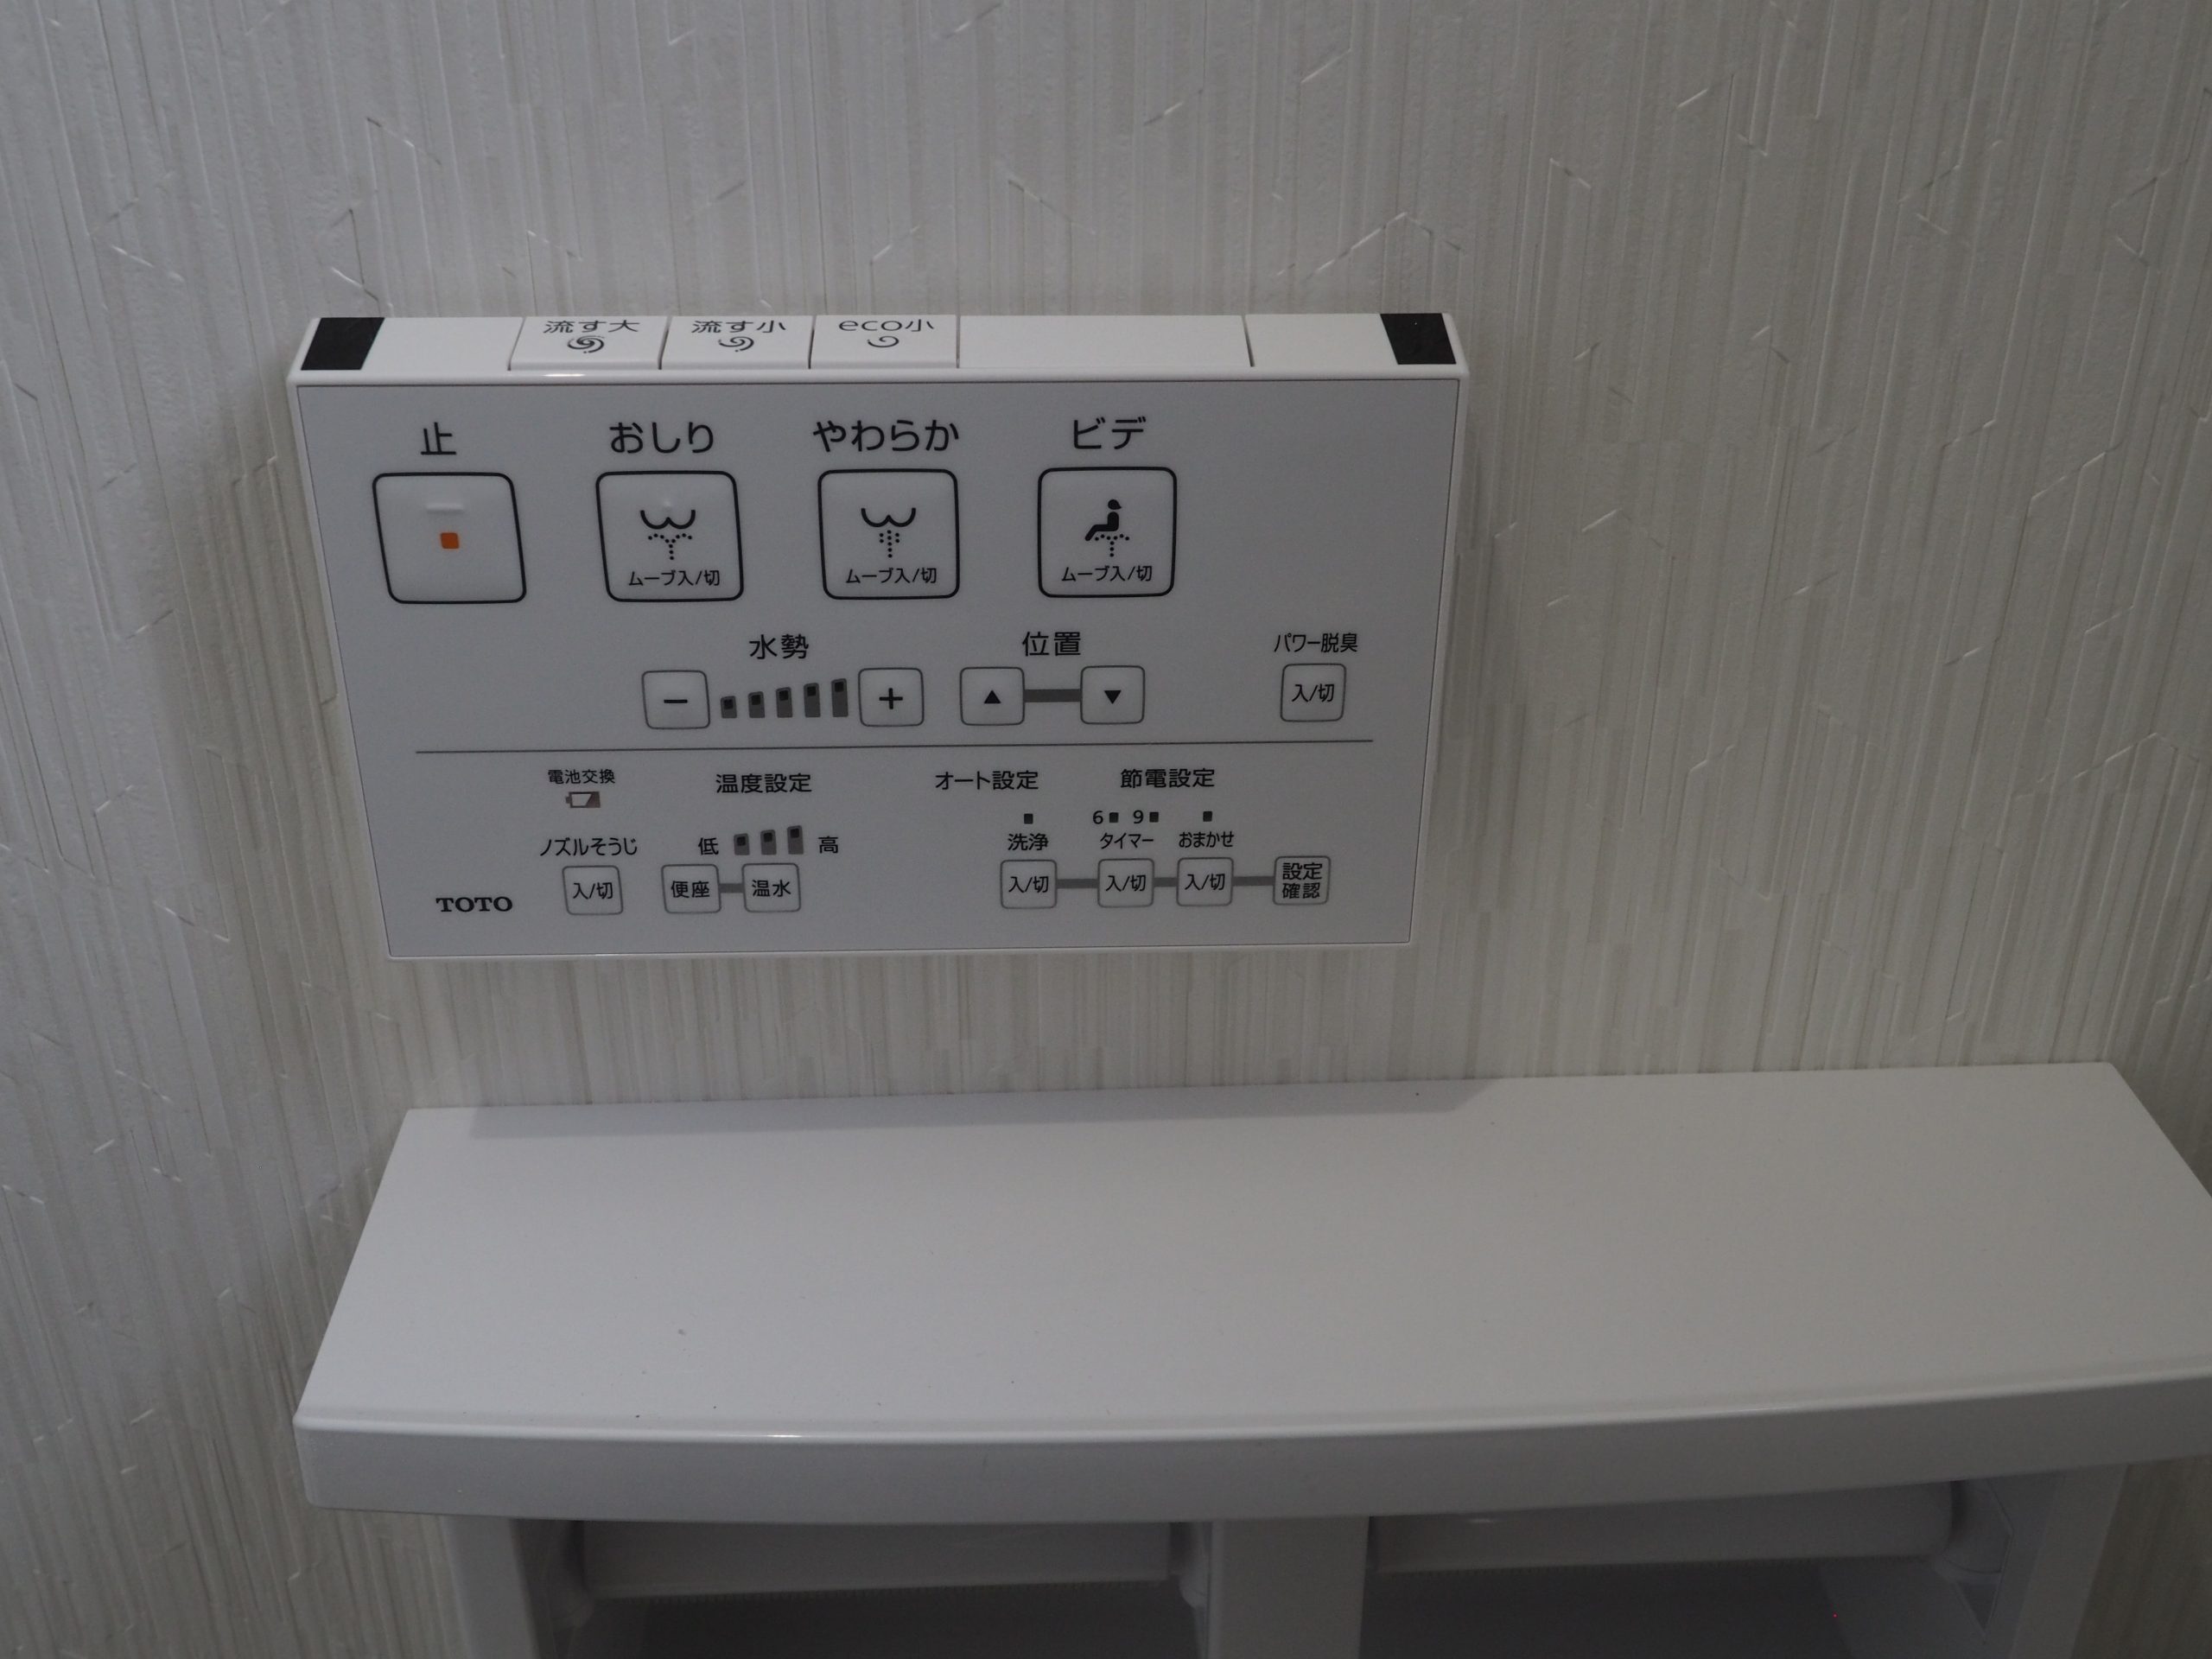 川越市新築戸建住宅のウォッシュレット付きトイレのリモコンの画像です